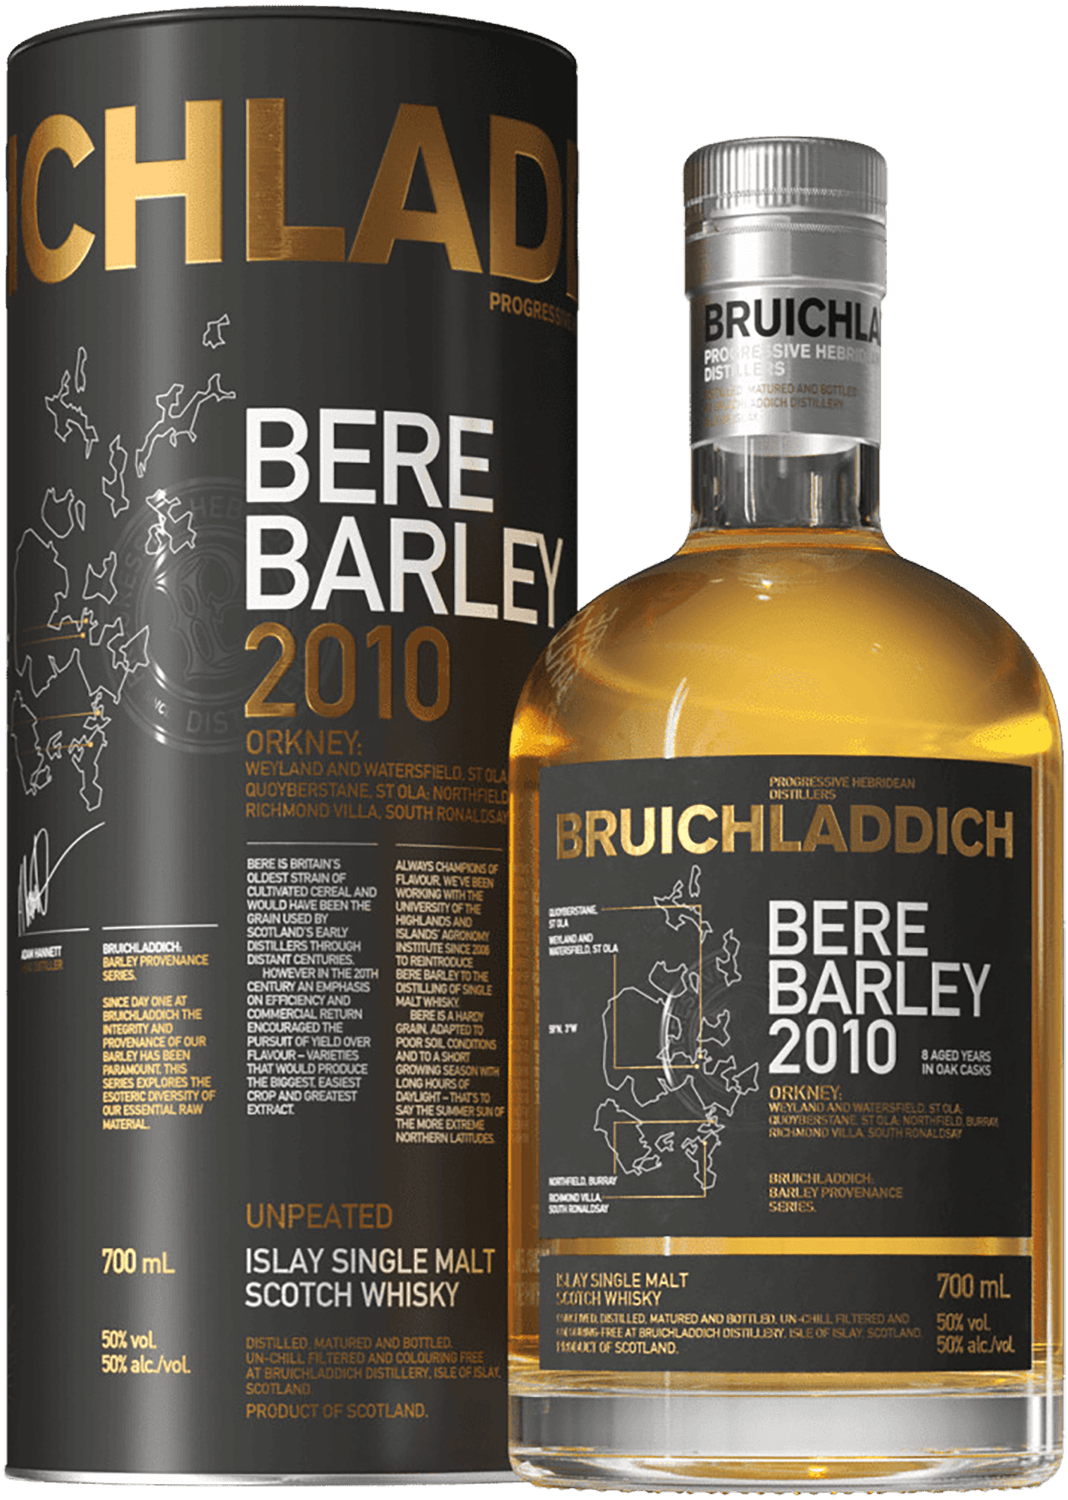 Bruichladdich Bere Barley Islay single malt scotch whisky (gift box) caol ila islay single malt scotch whisky 12 y o gift box